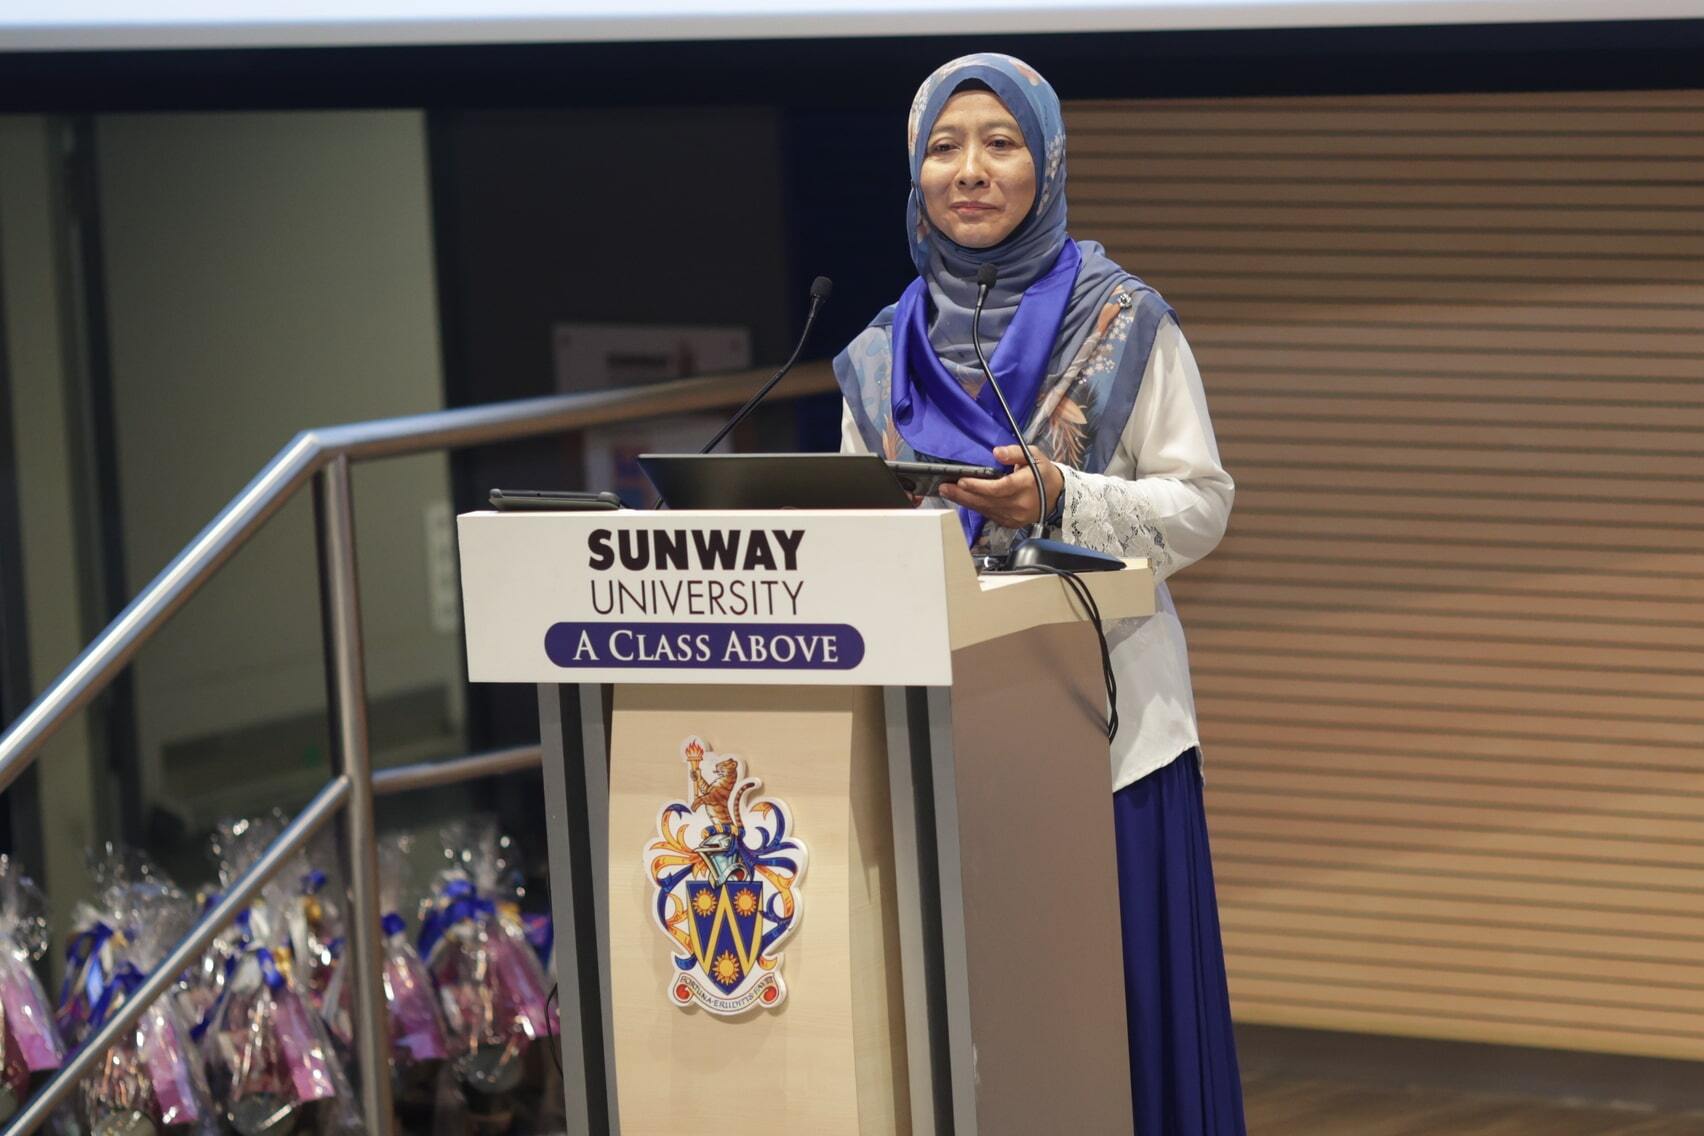 马来西亚看到 50 岁以下大肠癌的“令人担忧”上升：卫生部官员